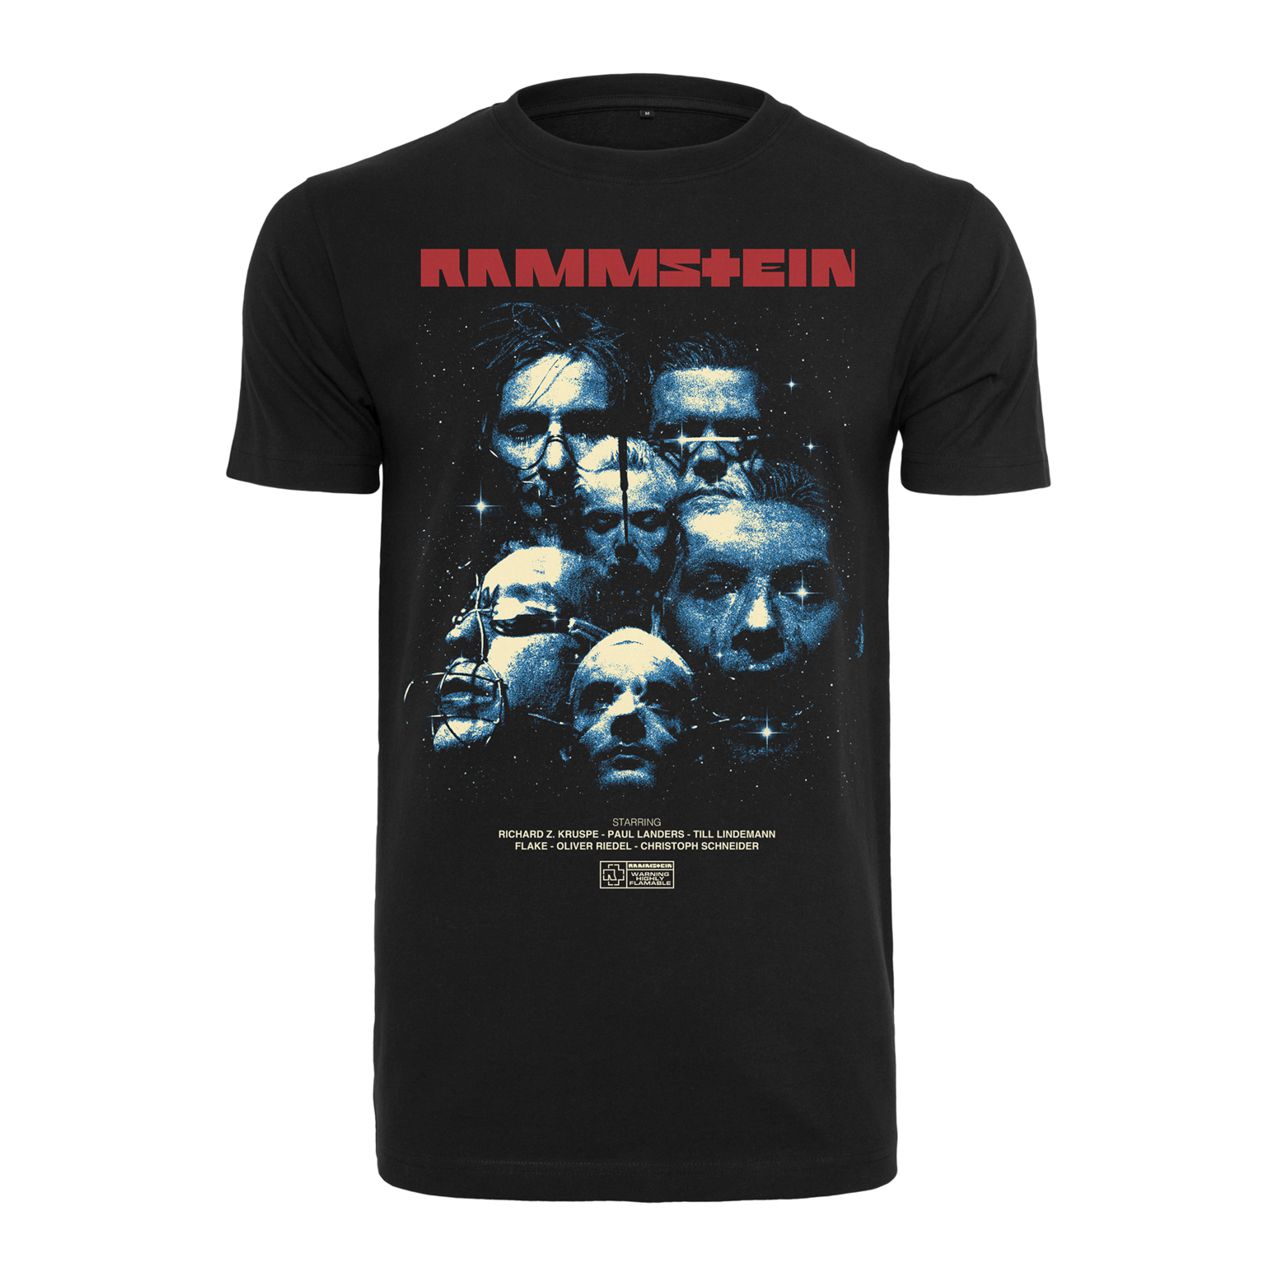 Rammstein Fanartikel Band Merchandise Shop The Studio Deluxe